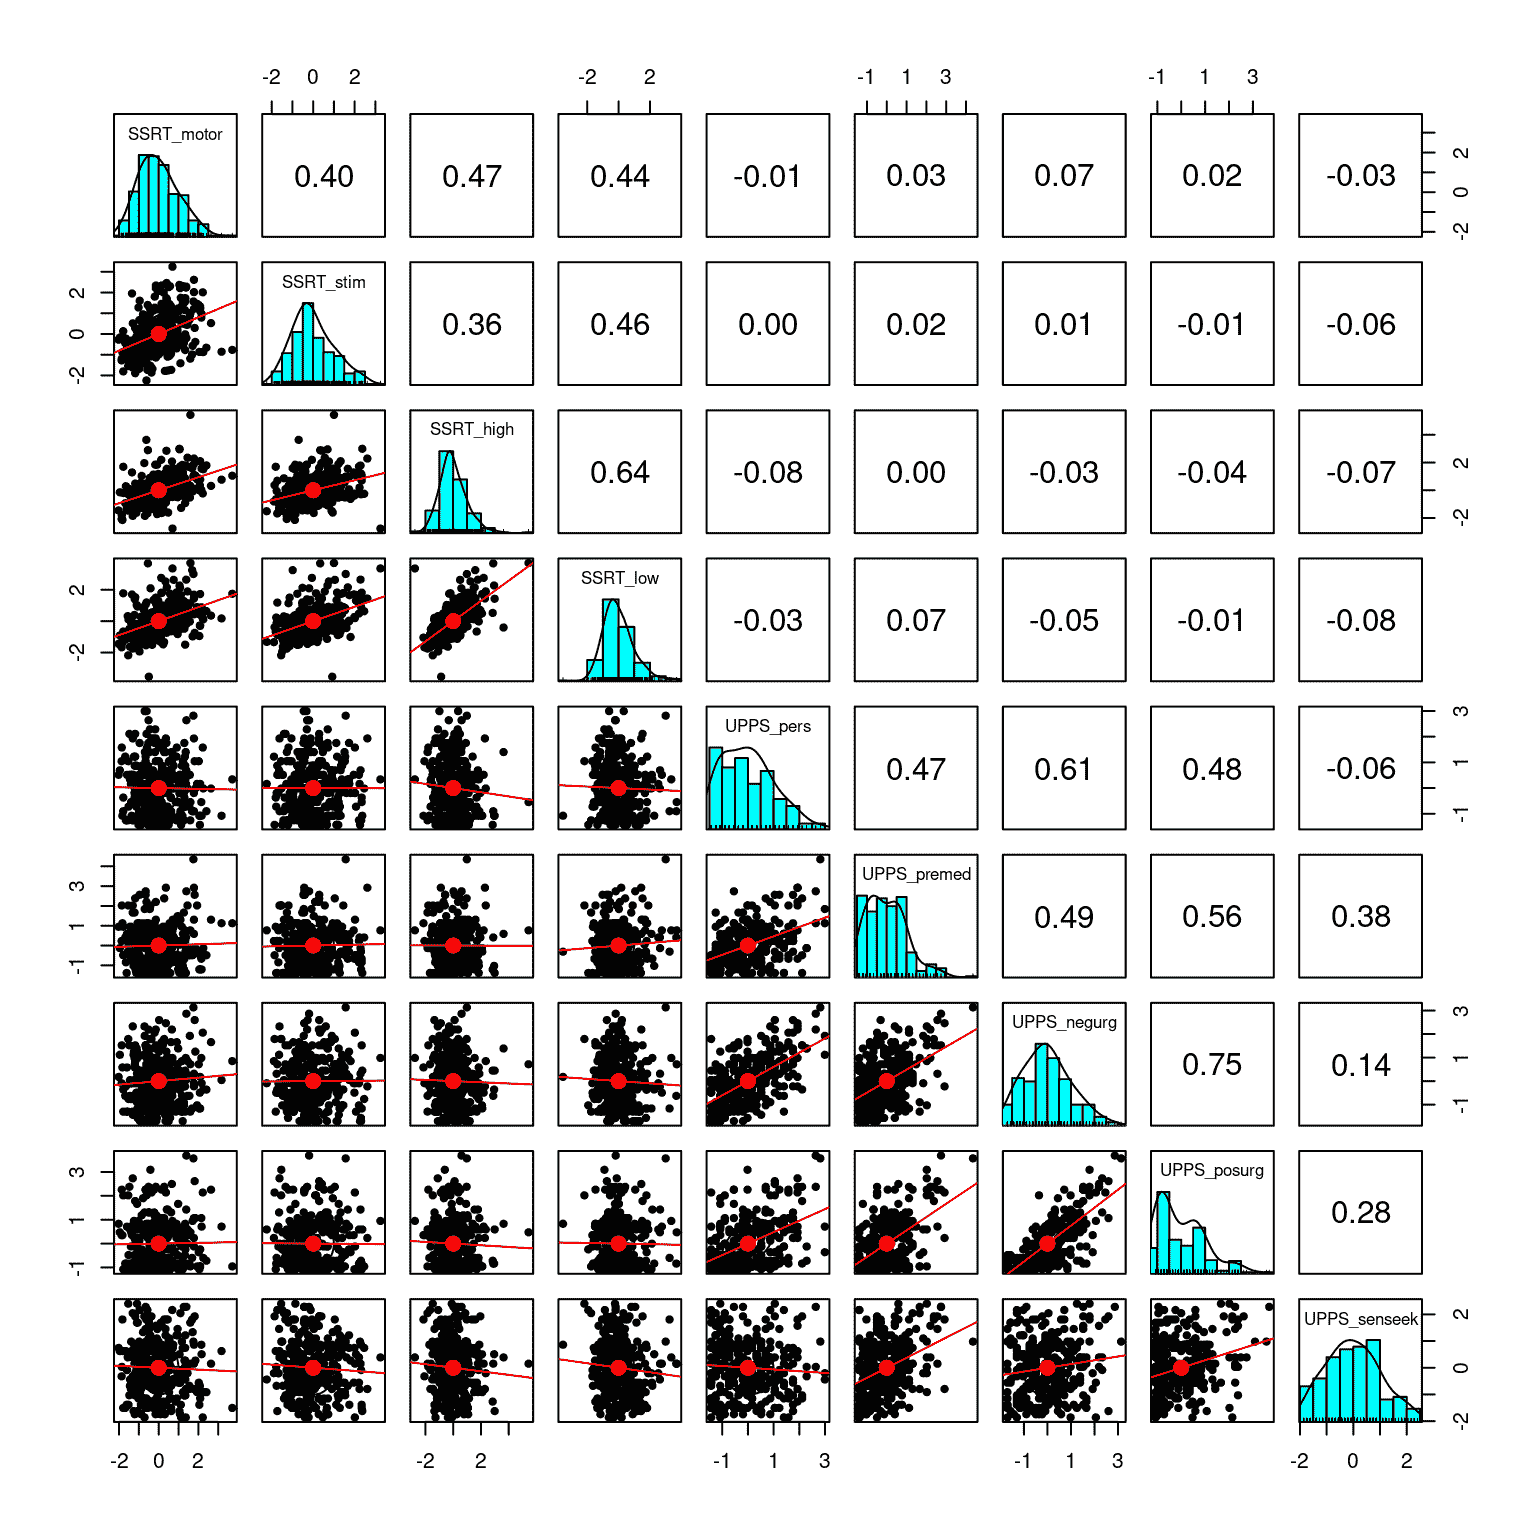 自我控制数据集中九个变量的矩阵散点图。矩阵中的对角元素显示了每个单独变量的直方图。左下方的面板显示了每对变量之间的关系散点图，右上方的面板显示了每对变量的相关系数。